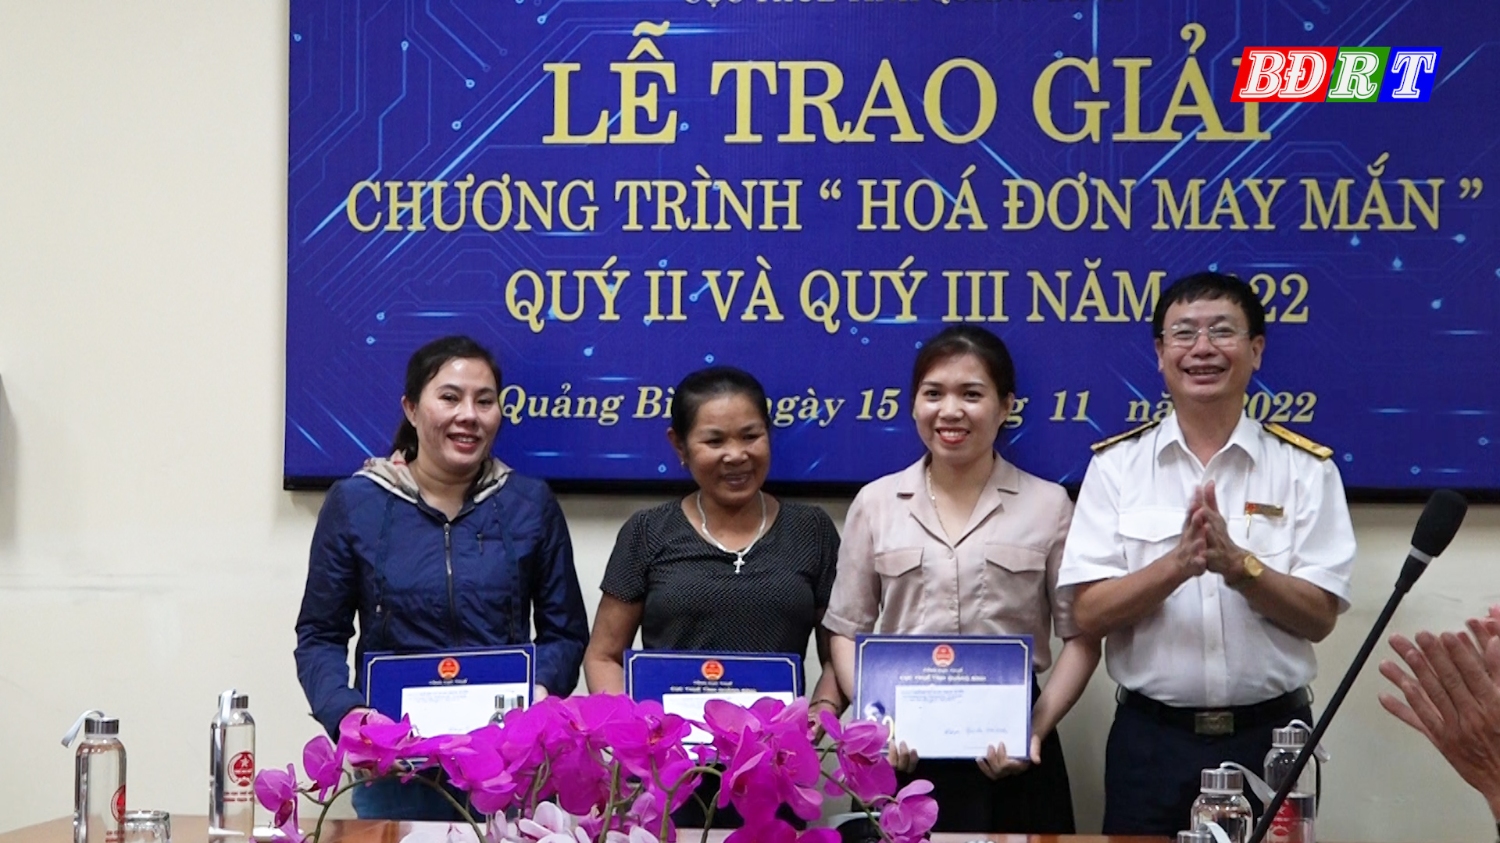 03 Cá nhân, hộ kinh doanh tại khu vực Quảng Trạch Ba Đồn trúng giải ba “Hóa đơn may mắn” quý II và quý III năm 2022